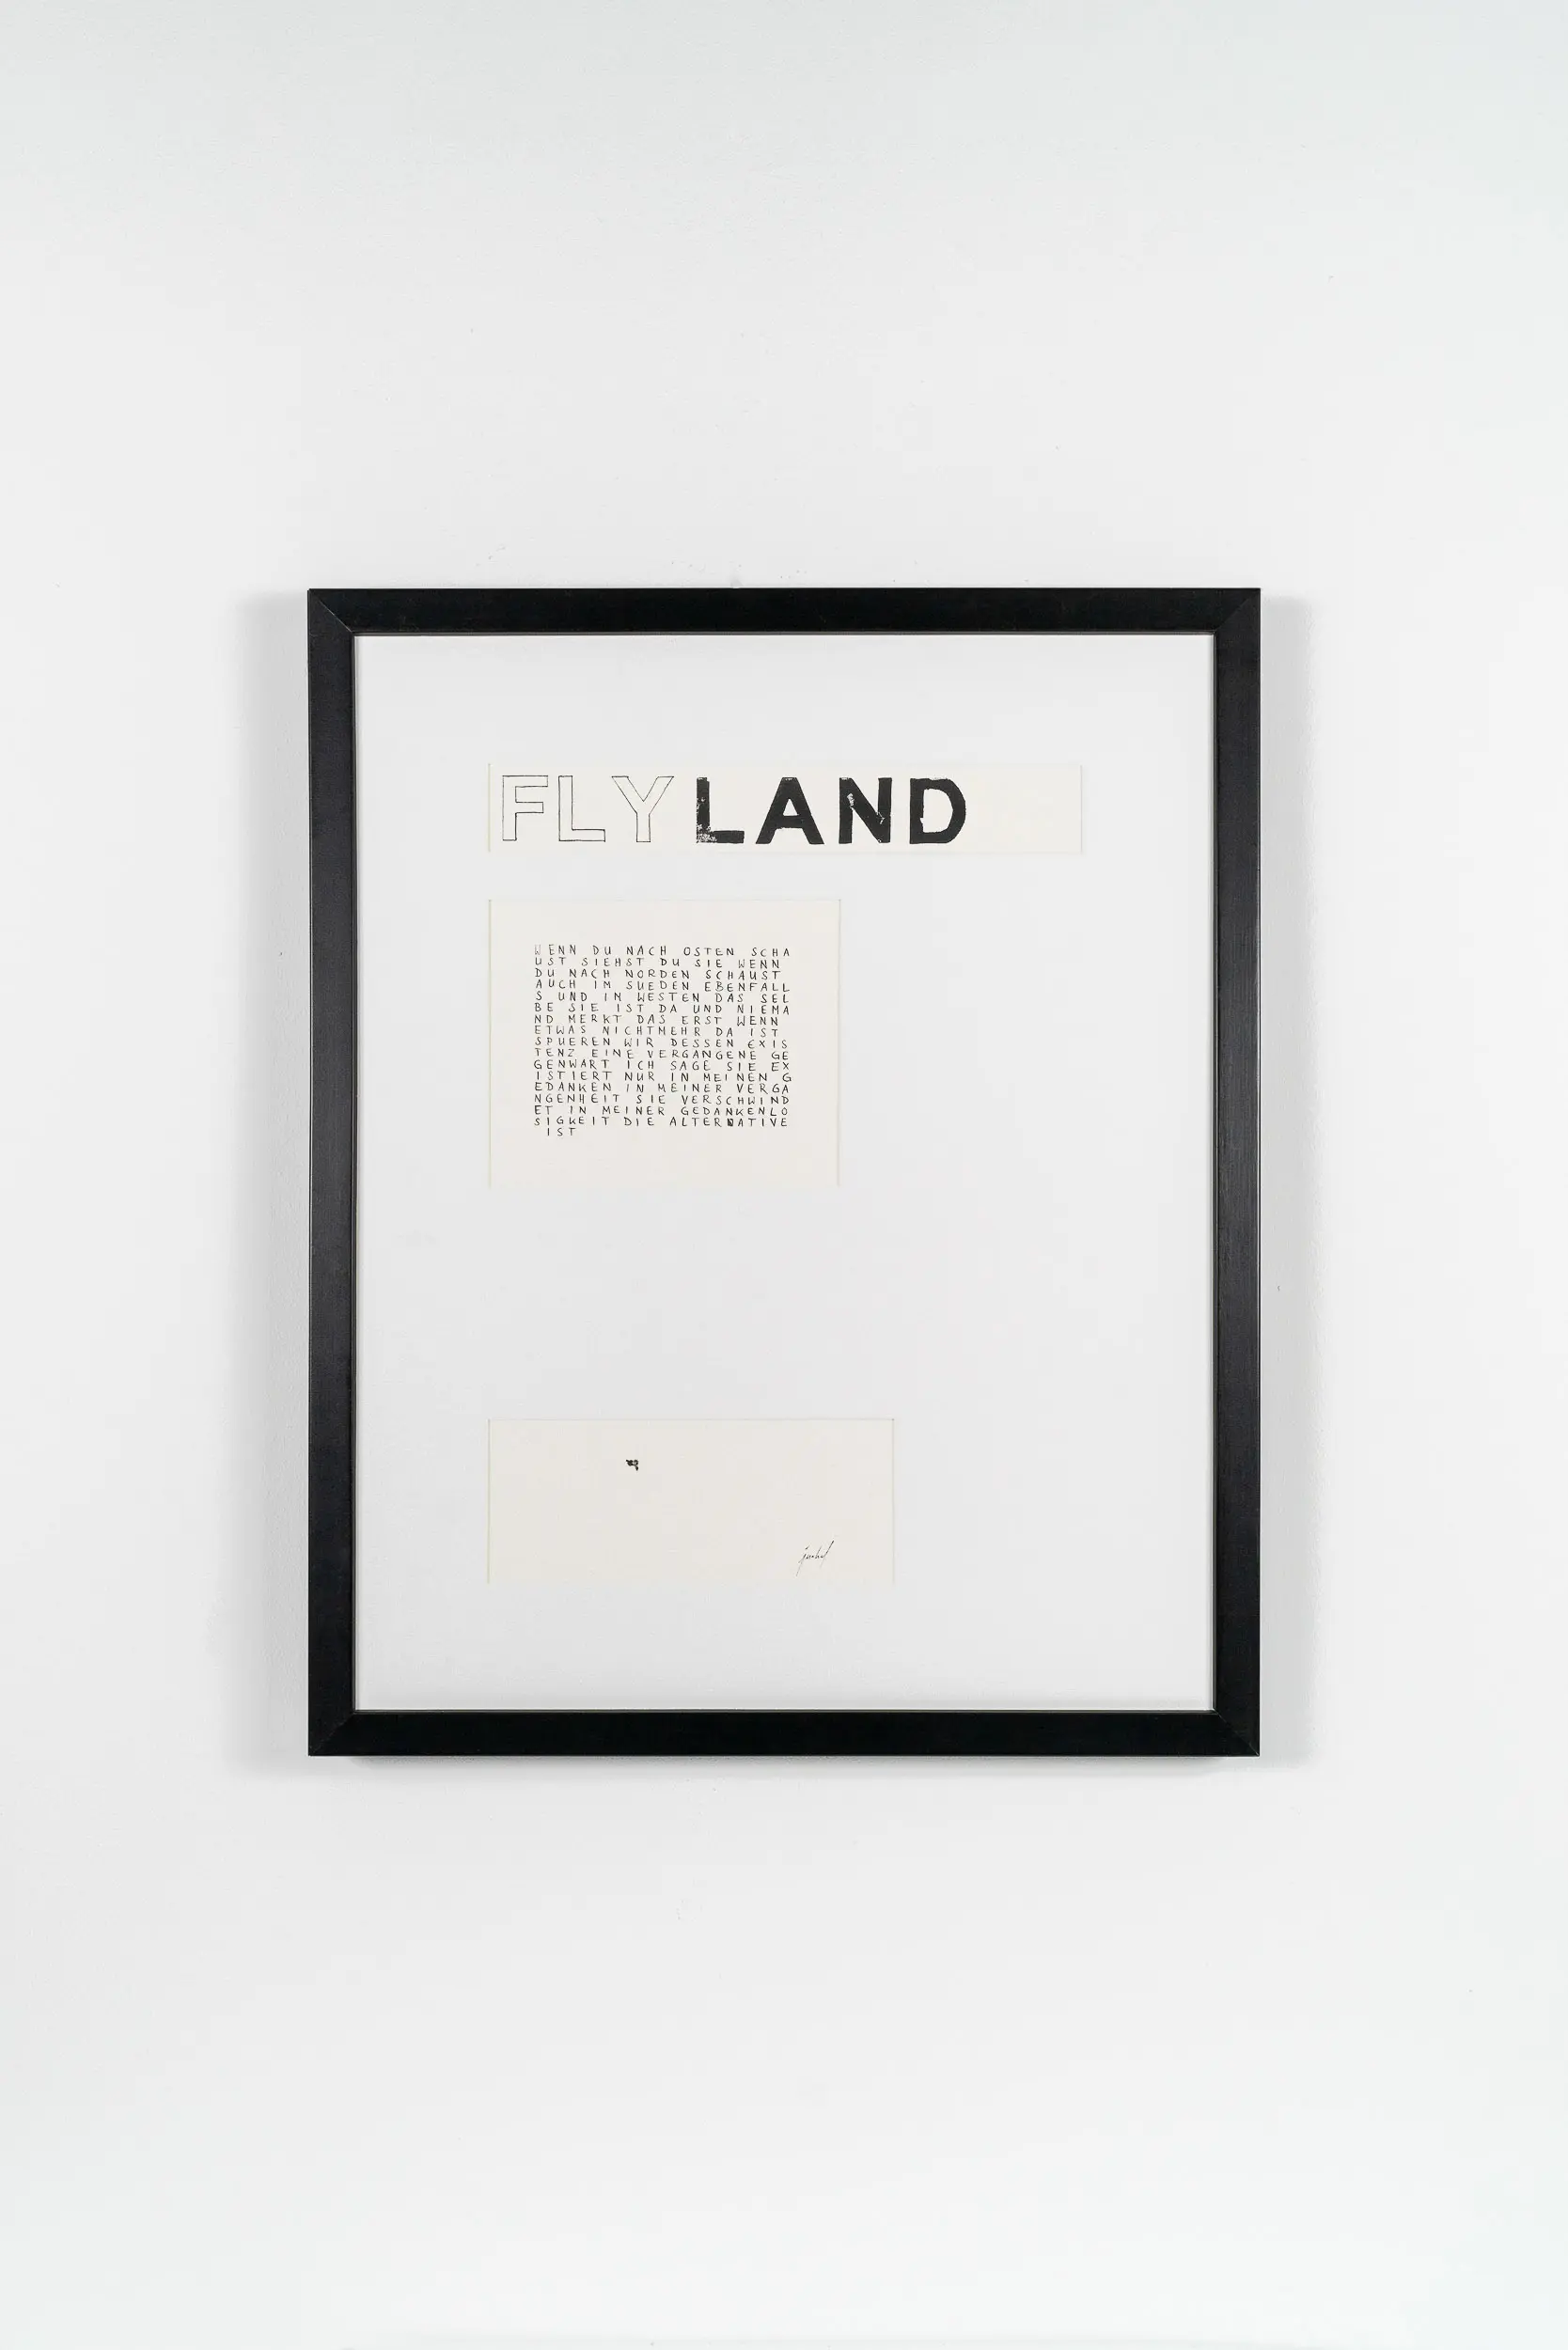 FL04 Flyland 40 × 50 cm Papier / Tusche / Holzdruck / Fliegenhaut 2013 